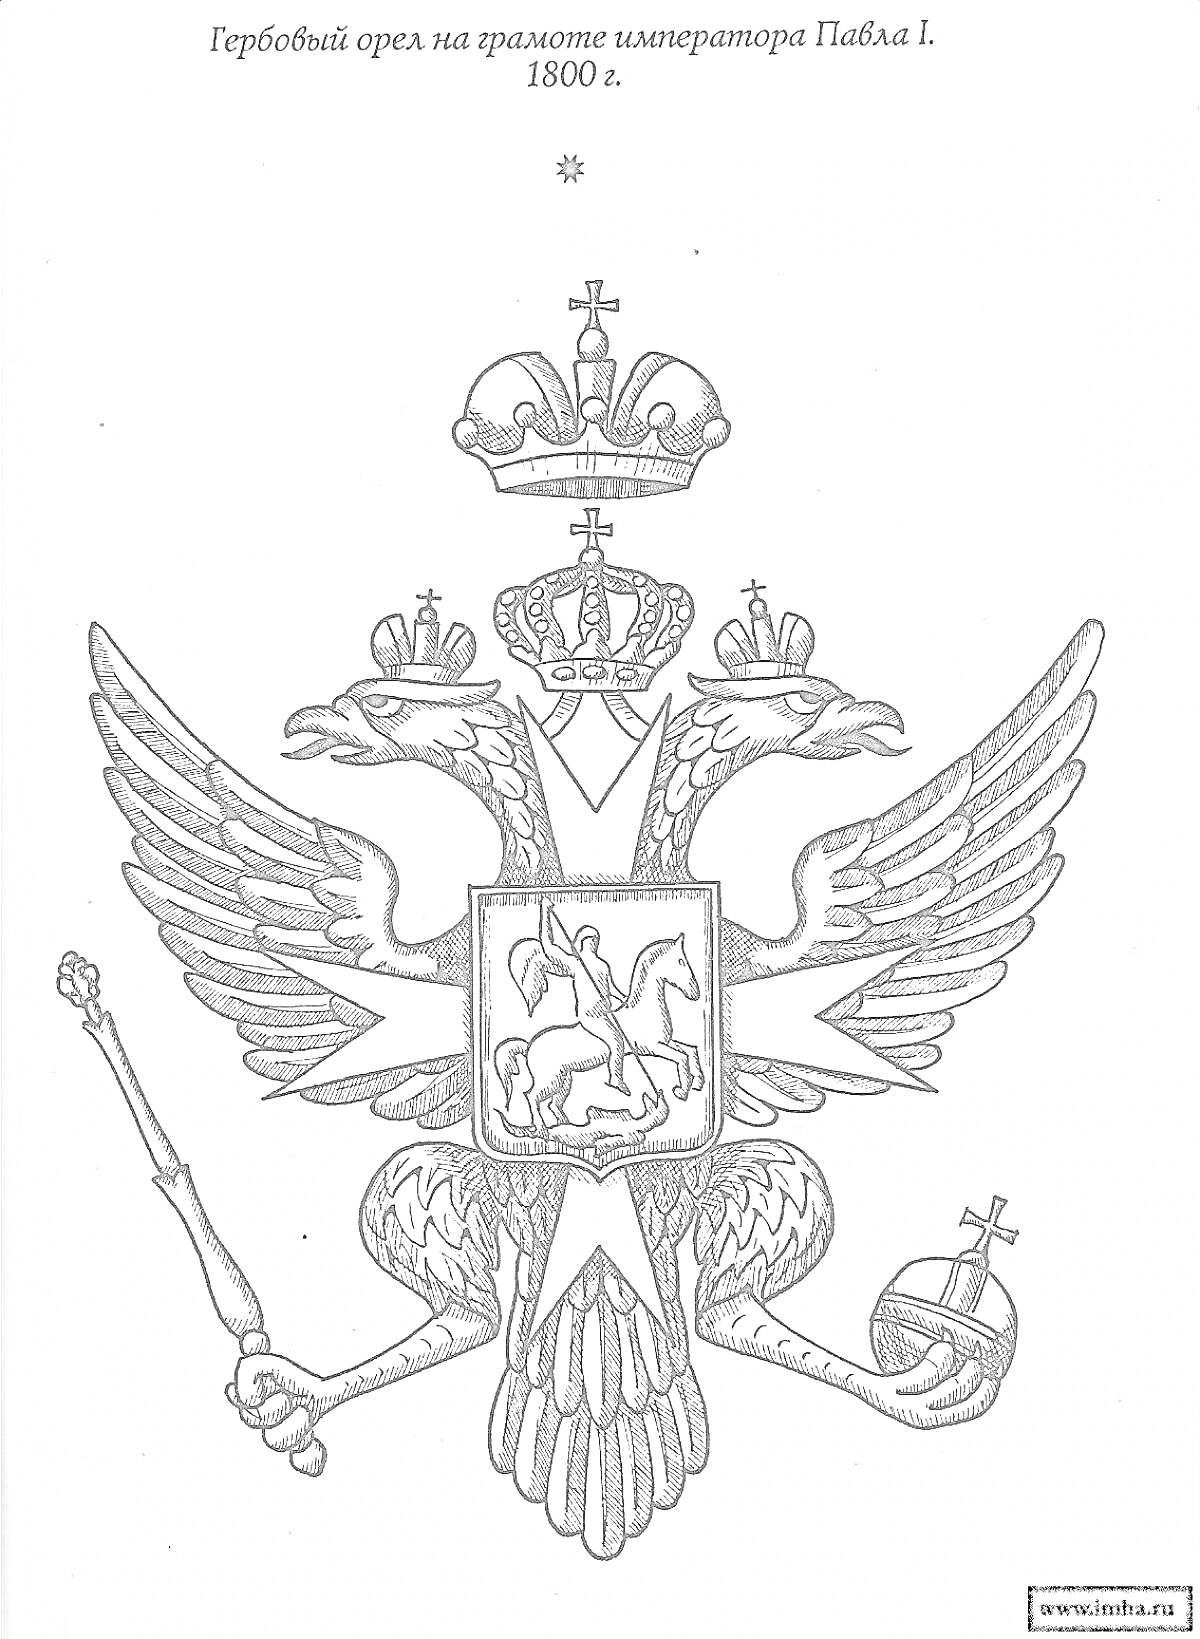 Раскраска Гербовый орел на грамоте императора Павла I, 1800 г. Элементы: двуглавый орел, короны, держава, скипетр, всадник с копьем, змея